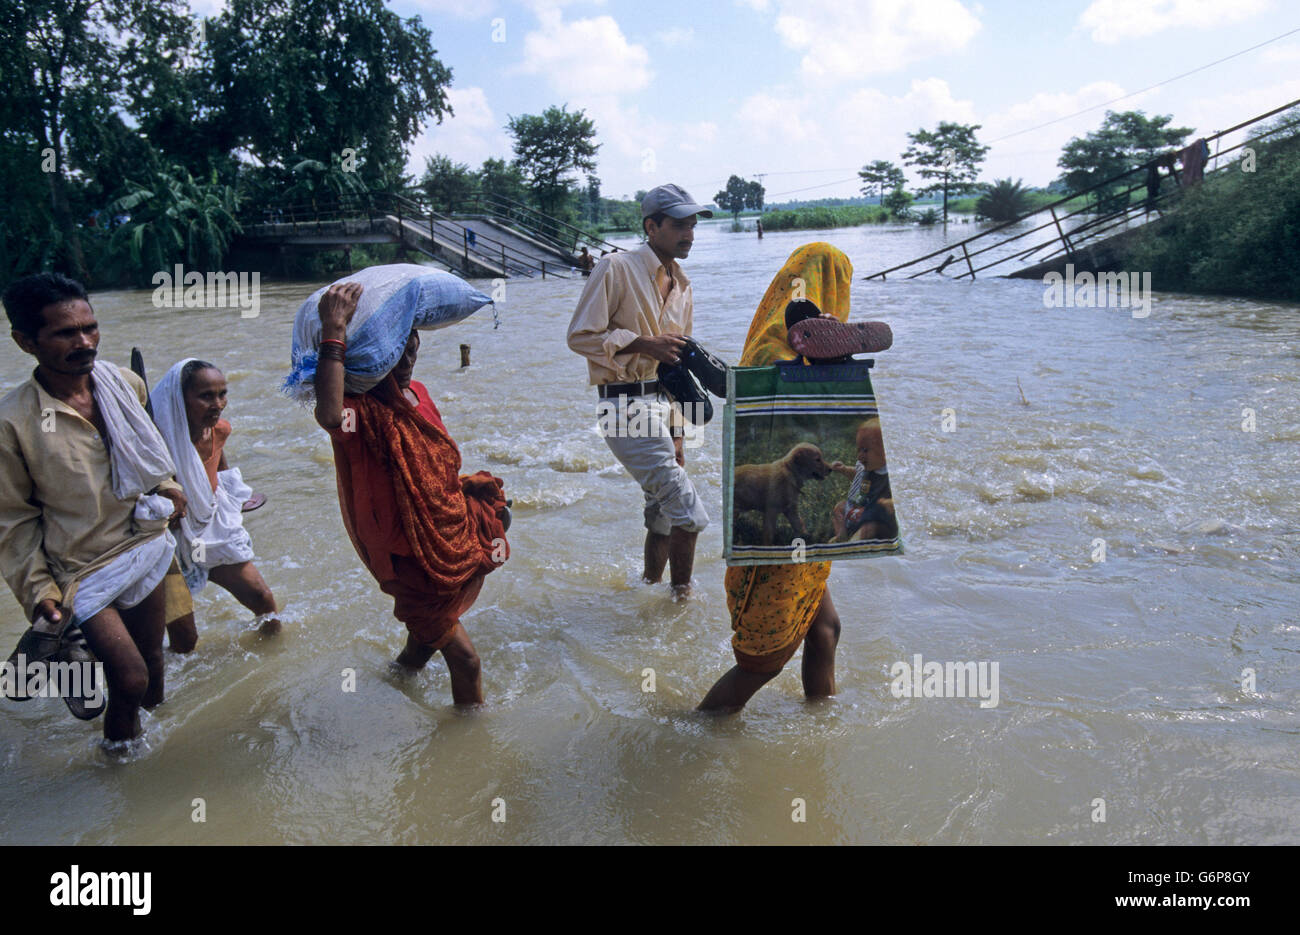 Indien, Bihar, Überflutung am Bagmati River ein Zweig der Ganges/Ganga Fluss wegen der schweren Monsunregen und schmelzen die Gletscher im Himalaya, Broken Bridge und beschädigte Straße, Menschen zu Fuß im Wasser, Klimawandel und globale Erwärmung Auswirkungen Stockfoto